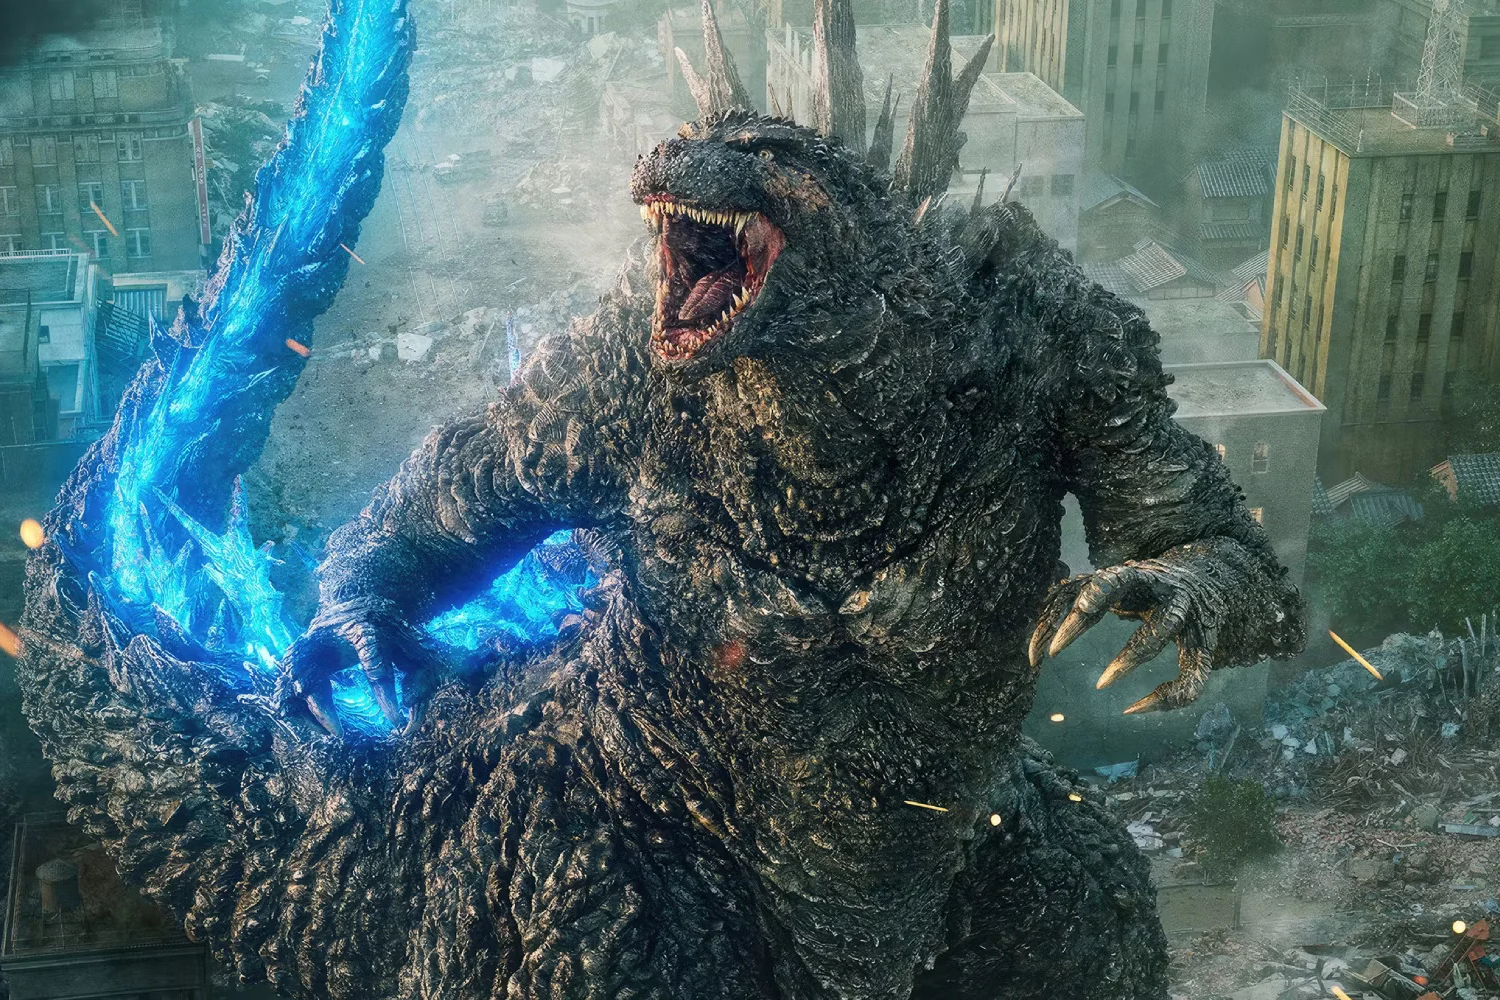 Godzilla roars in Godzilla Minus One.